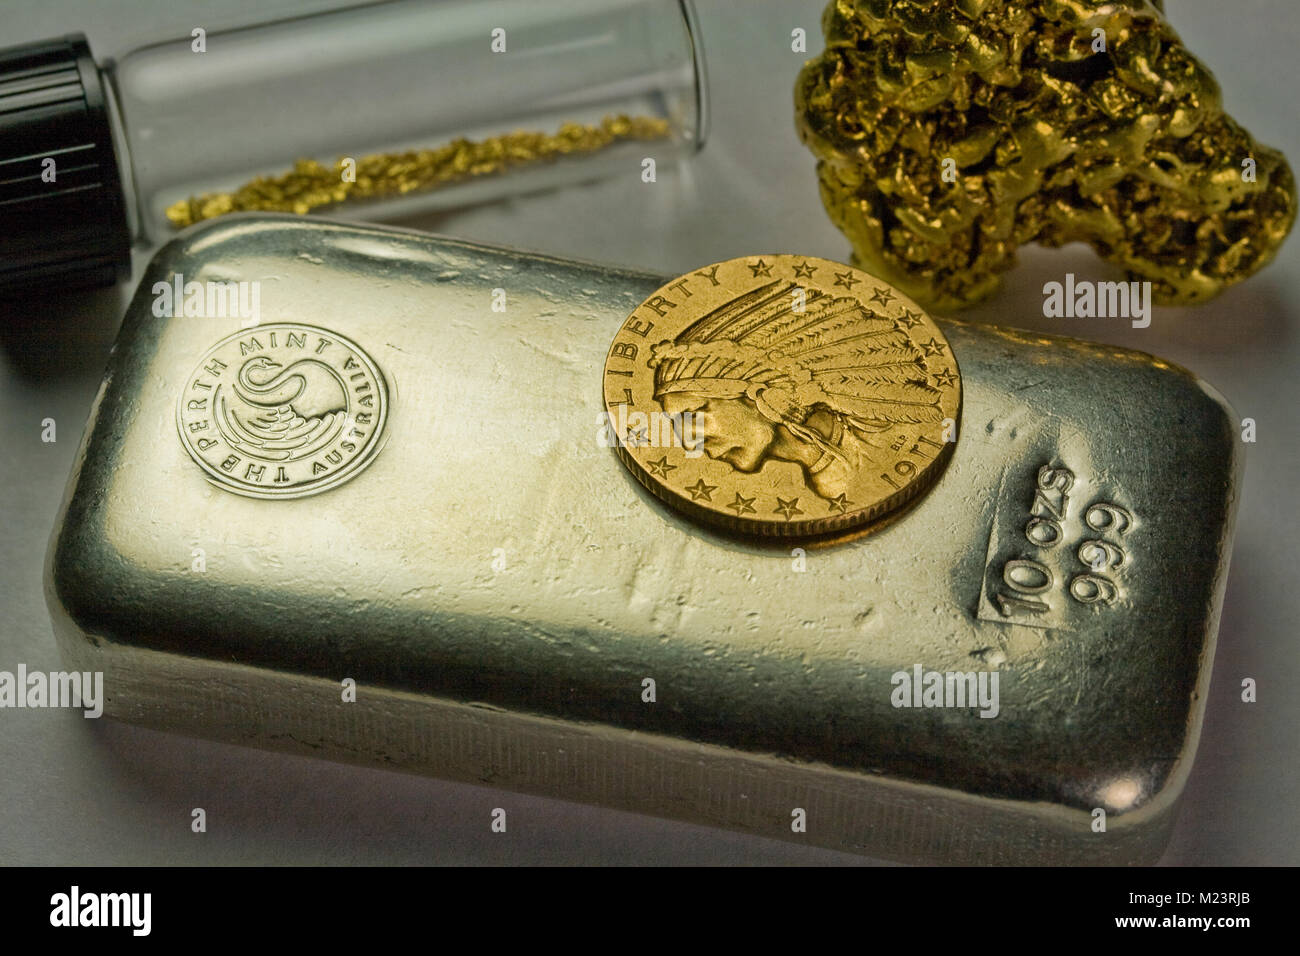 10 Unze Silber Bar, 1911 Gold $ 5 indische Münze und Rohstoffe Gold Nuggets Stockfoto